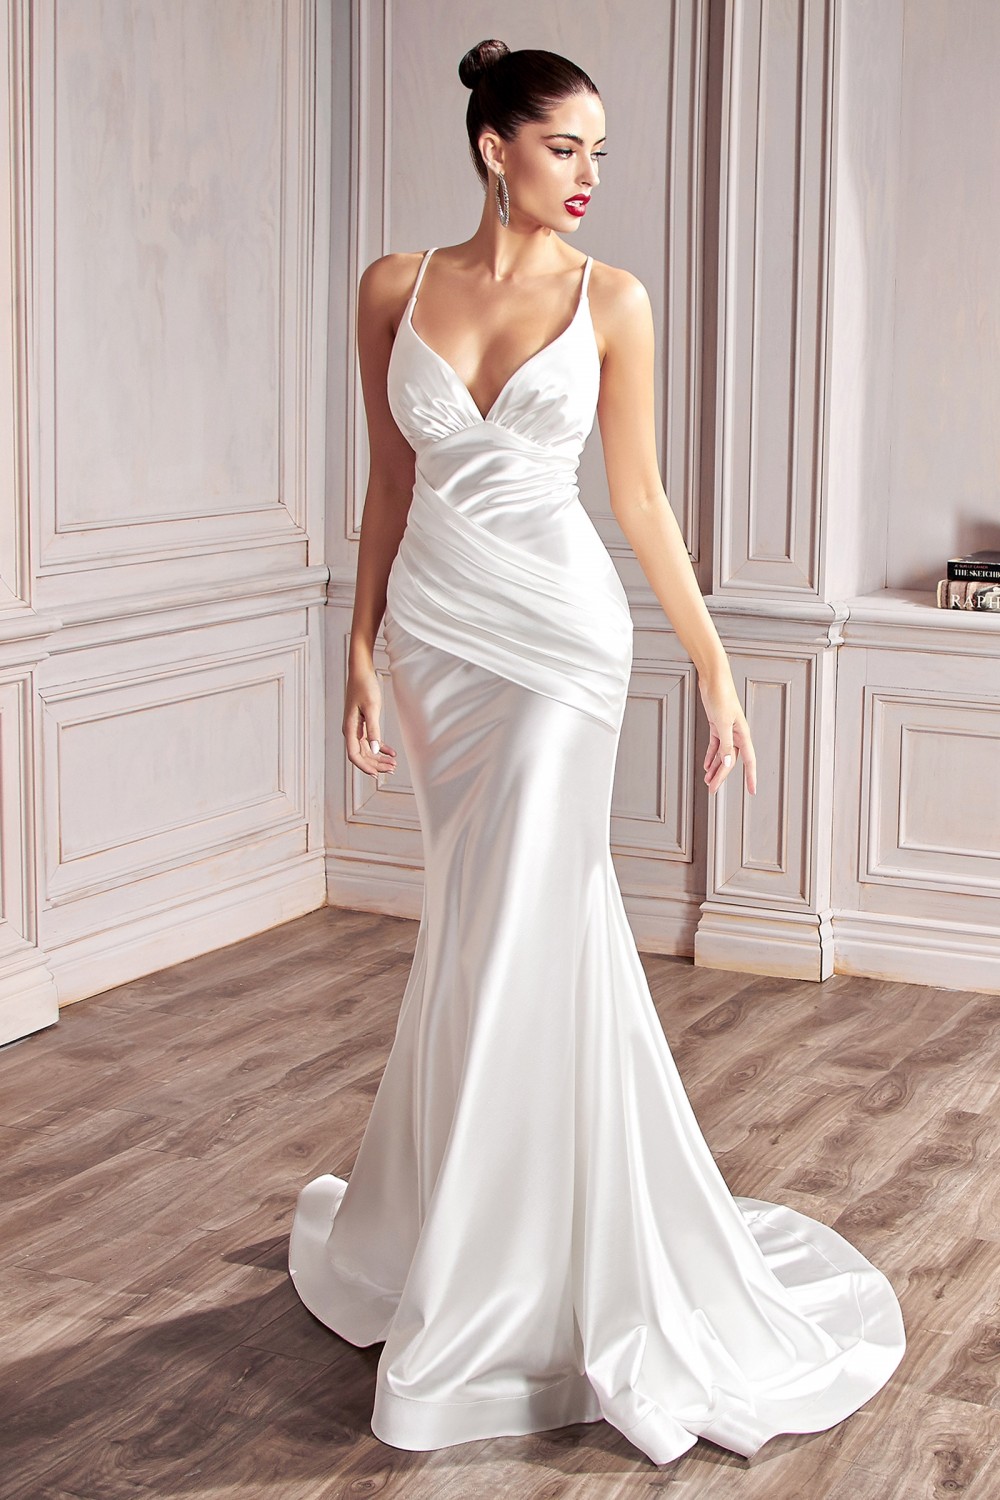 Stunning Satin Off-White Sweetheart Neckline Bride Dress